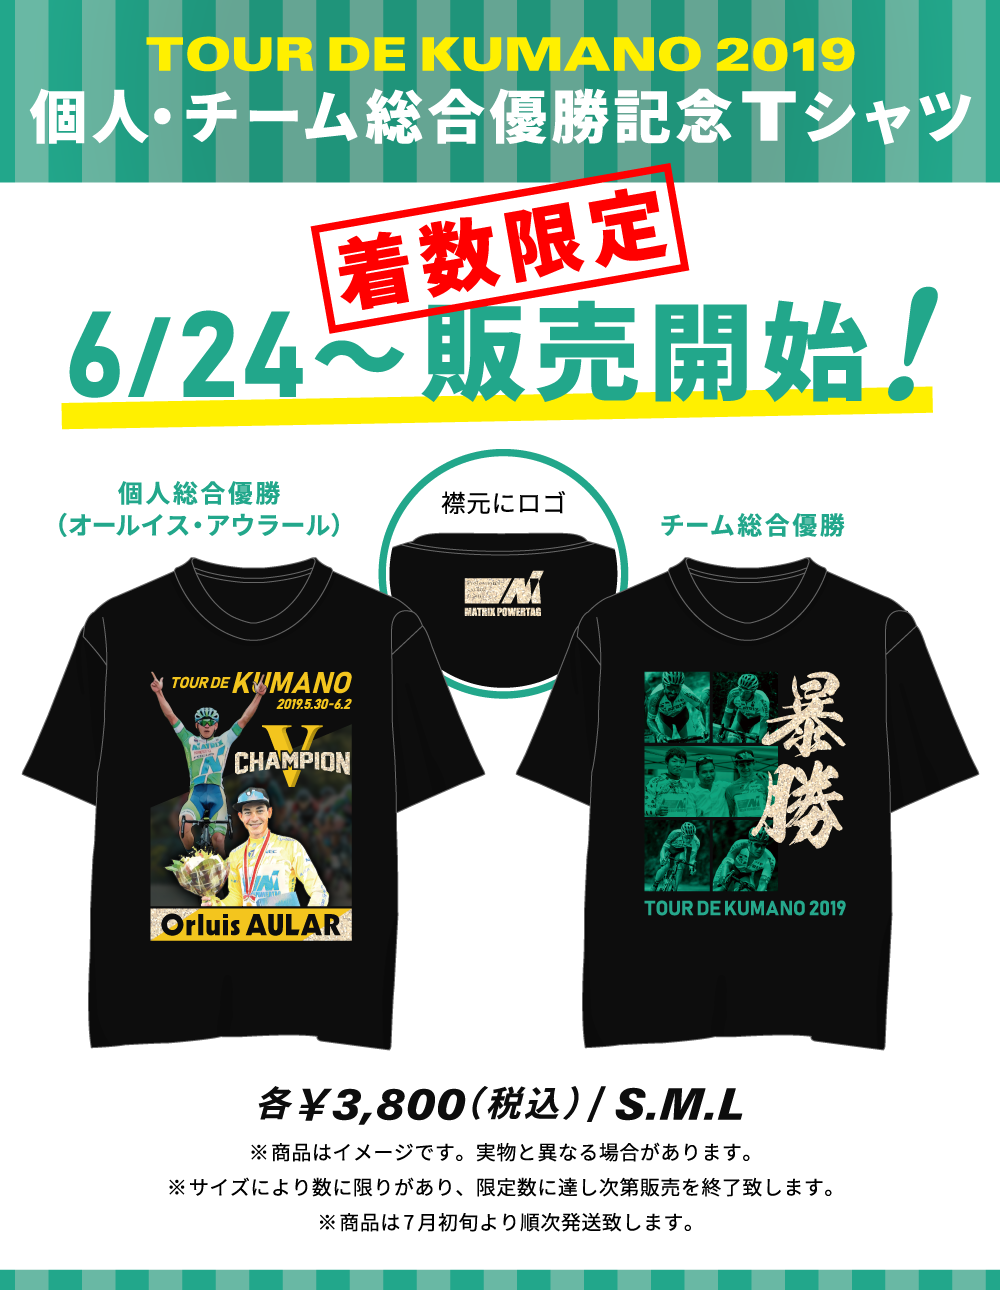 新商品にツール・ド・熊野2019 優勝記念Tシャツが登場！